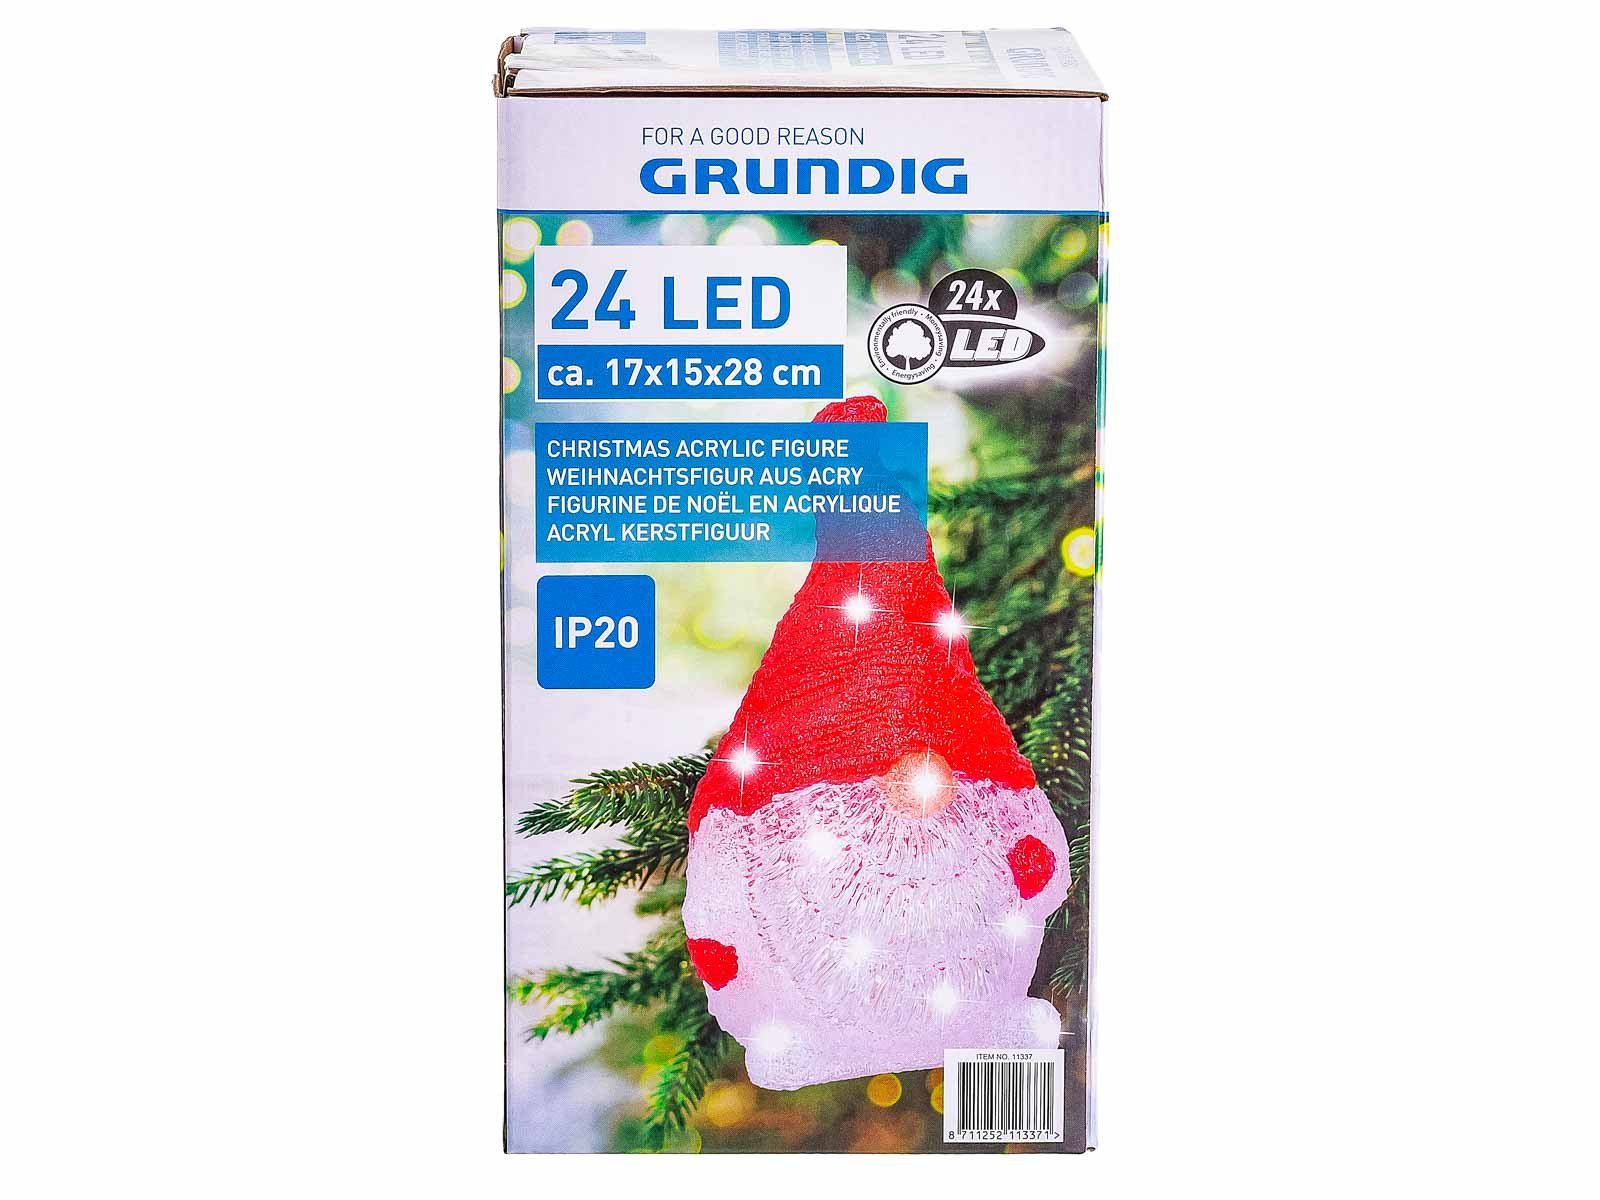 EDCO Wichtel Grundig LED (1 rot 24 St)